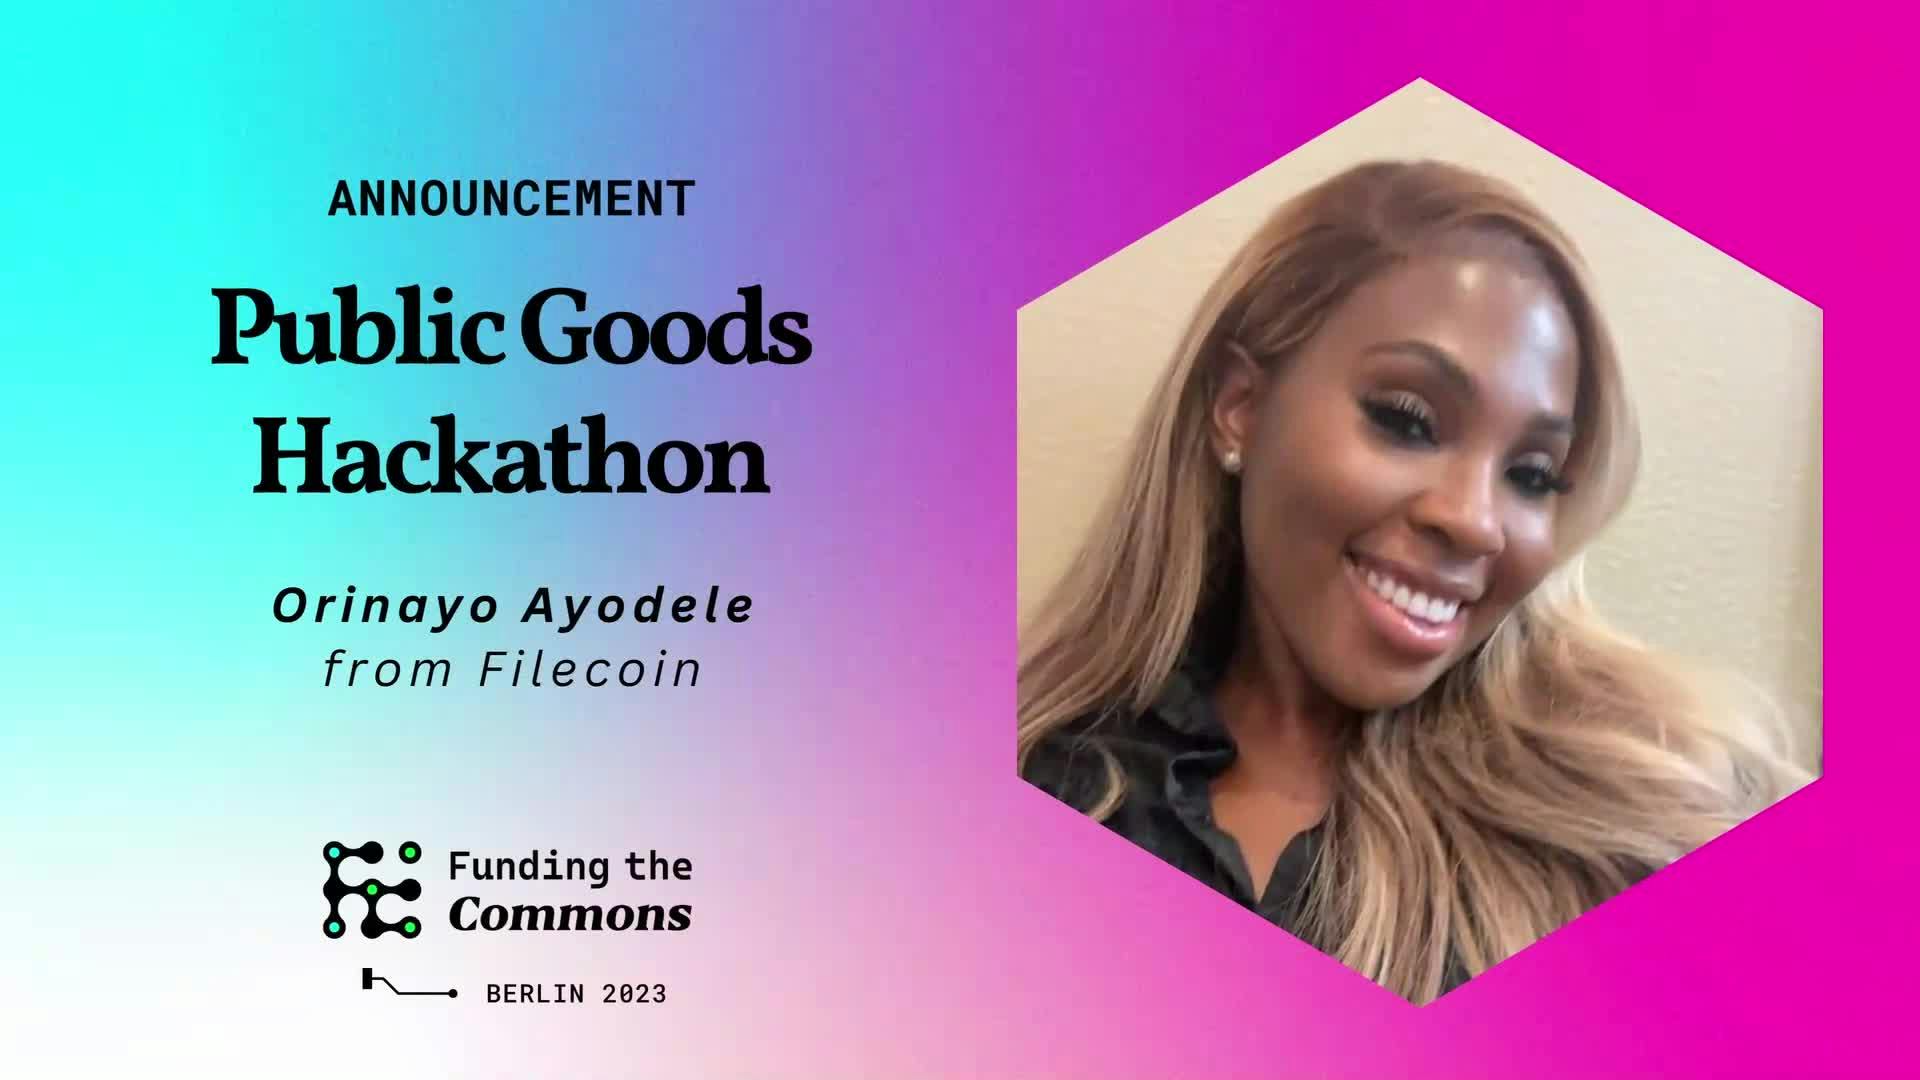 Public Goods Hackathon Announcement